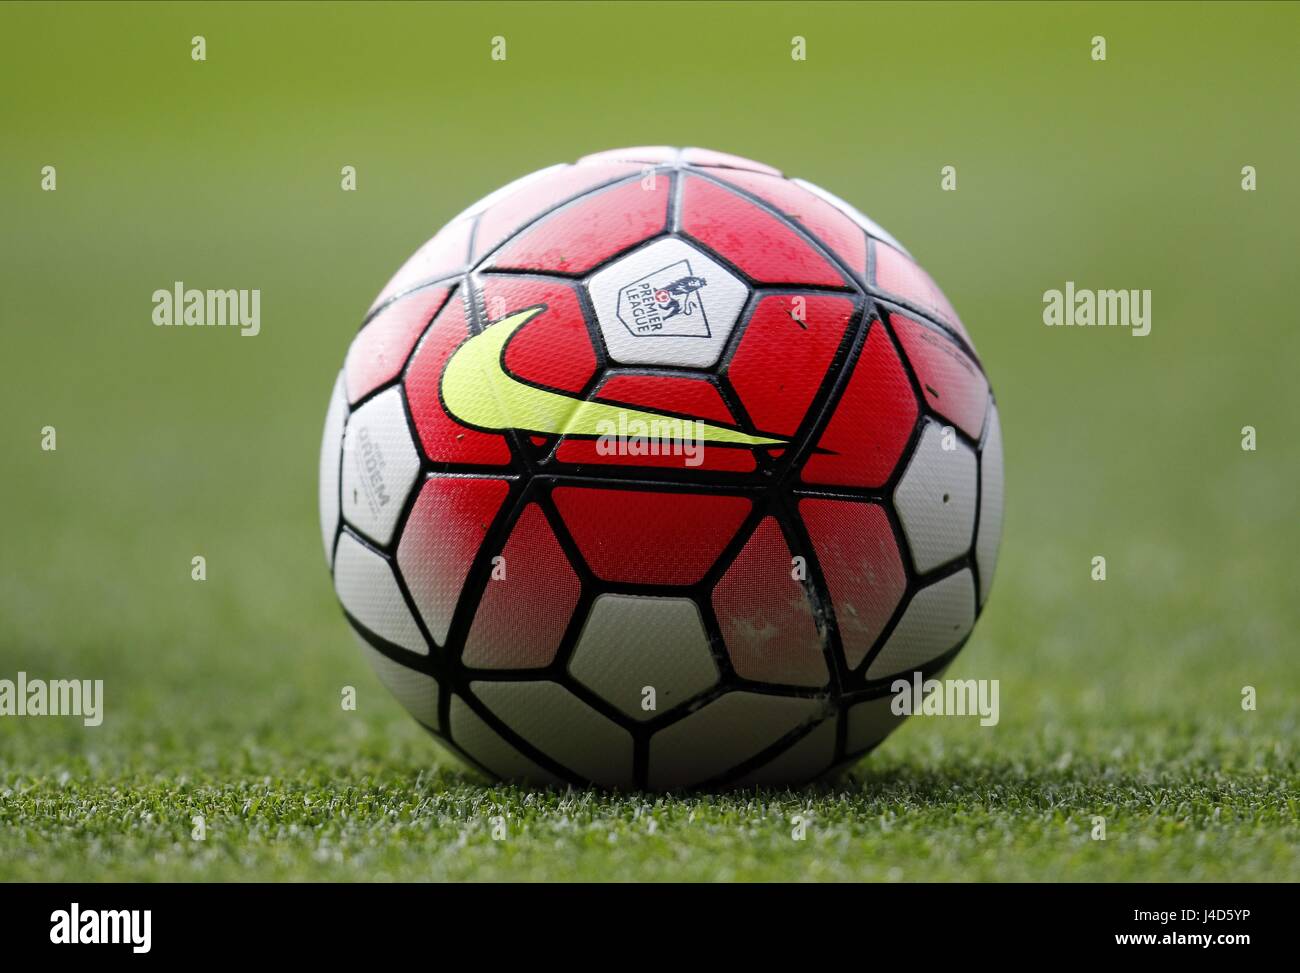 Nike fußball -Fotos und -Bildmaterial in hoher Auflösung – Alamy